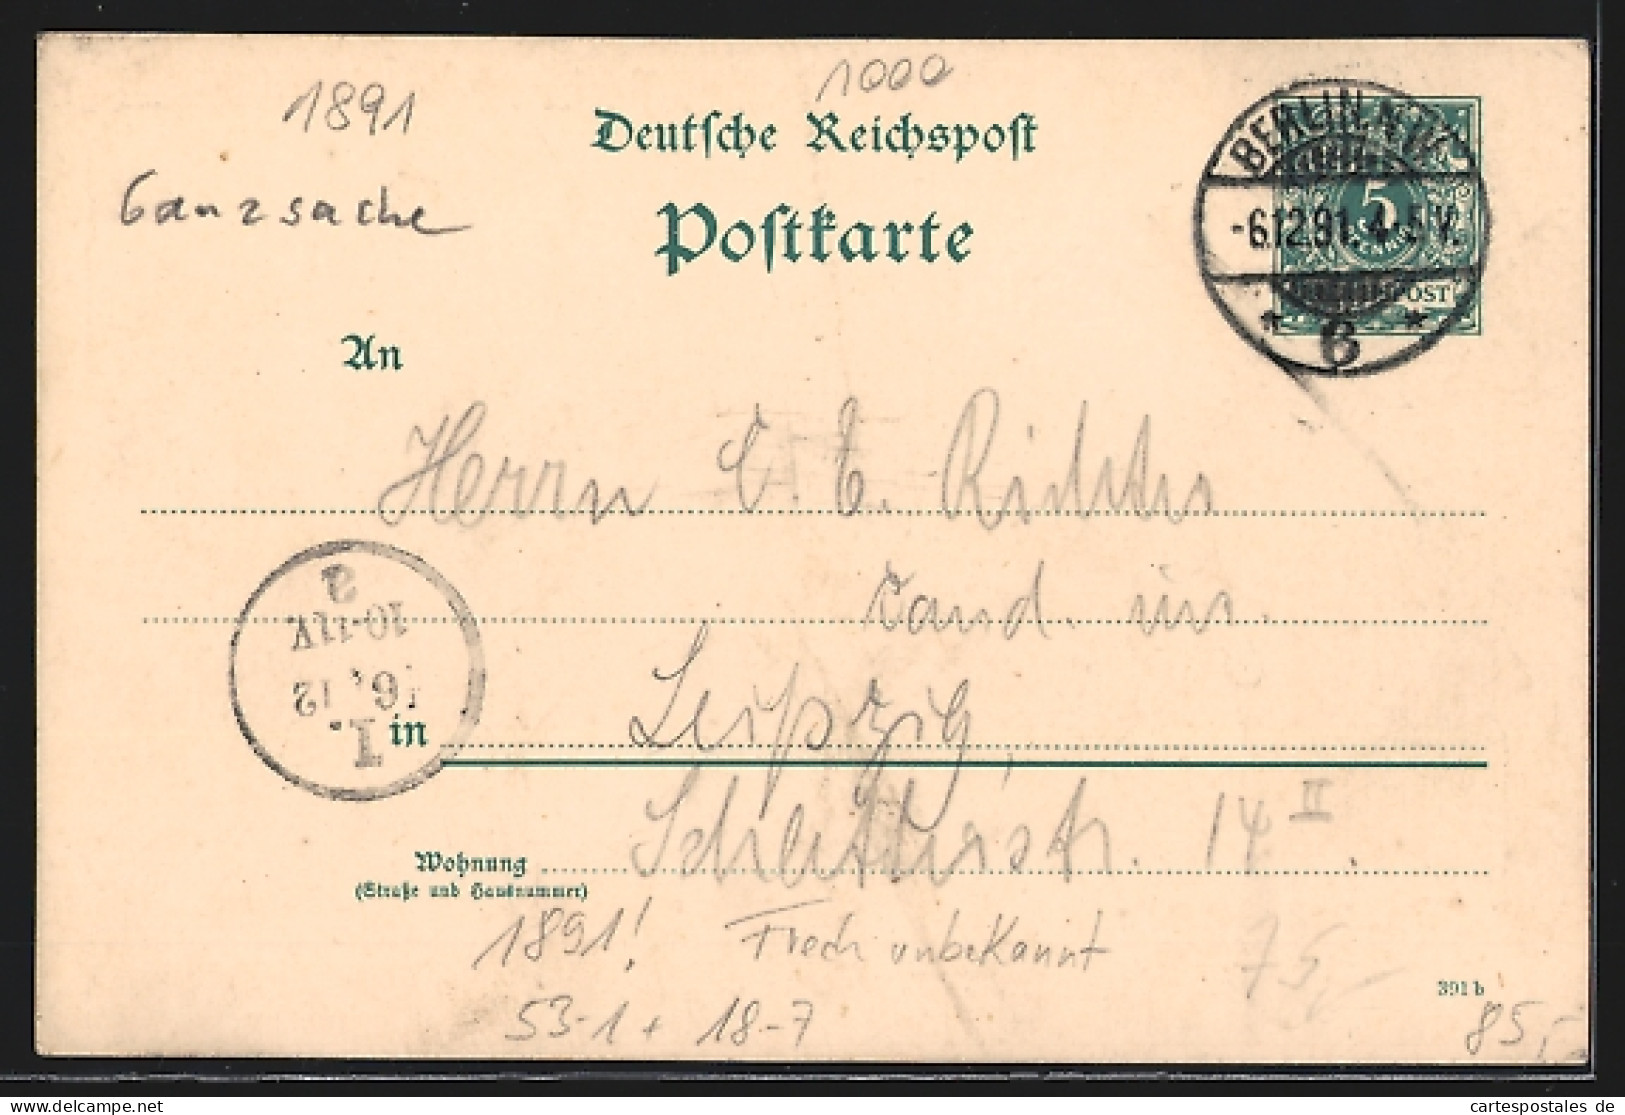 Vorläufer-Lithographie Ganzsache Frech Unbekannt: Berlin, 1891, Gasthaus Pschorr-Bräu-Garten, Karlstrasse 29, Sieges  - Cartes Postales